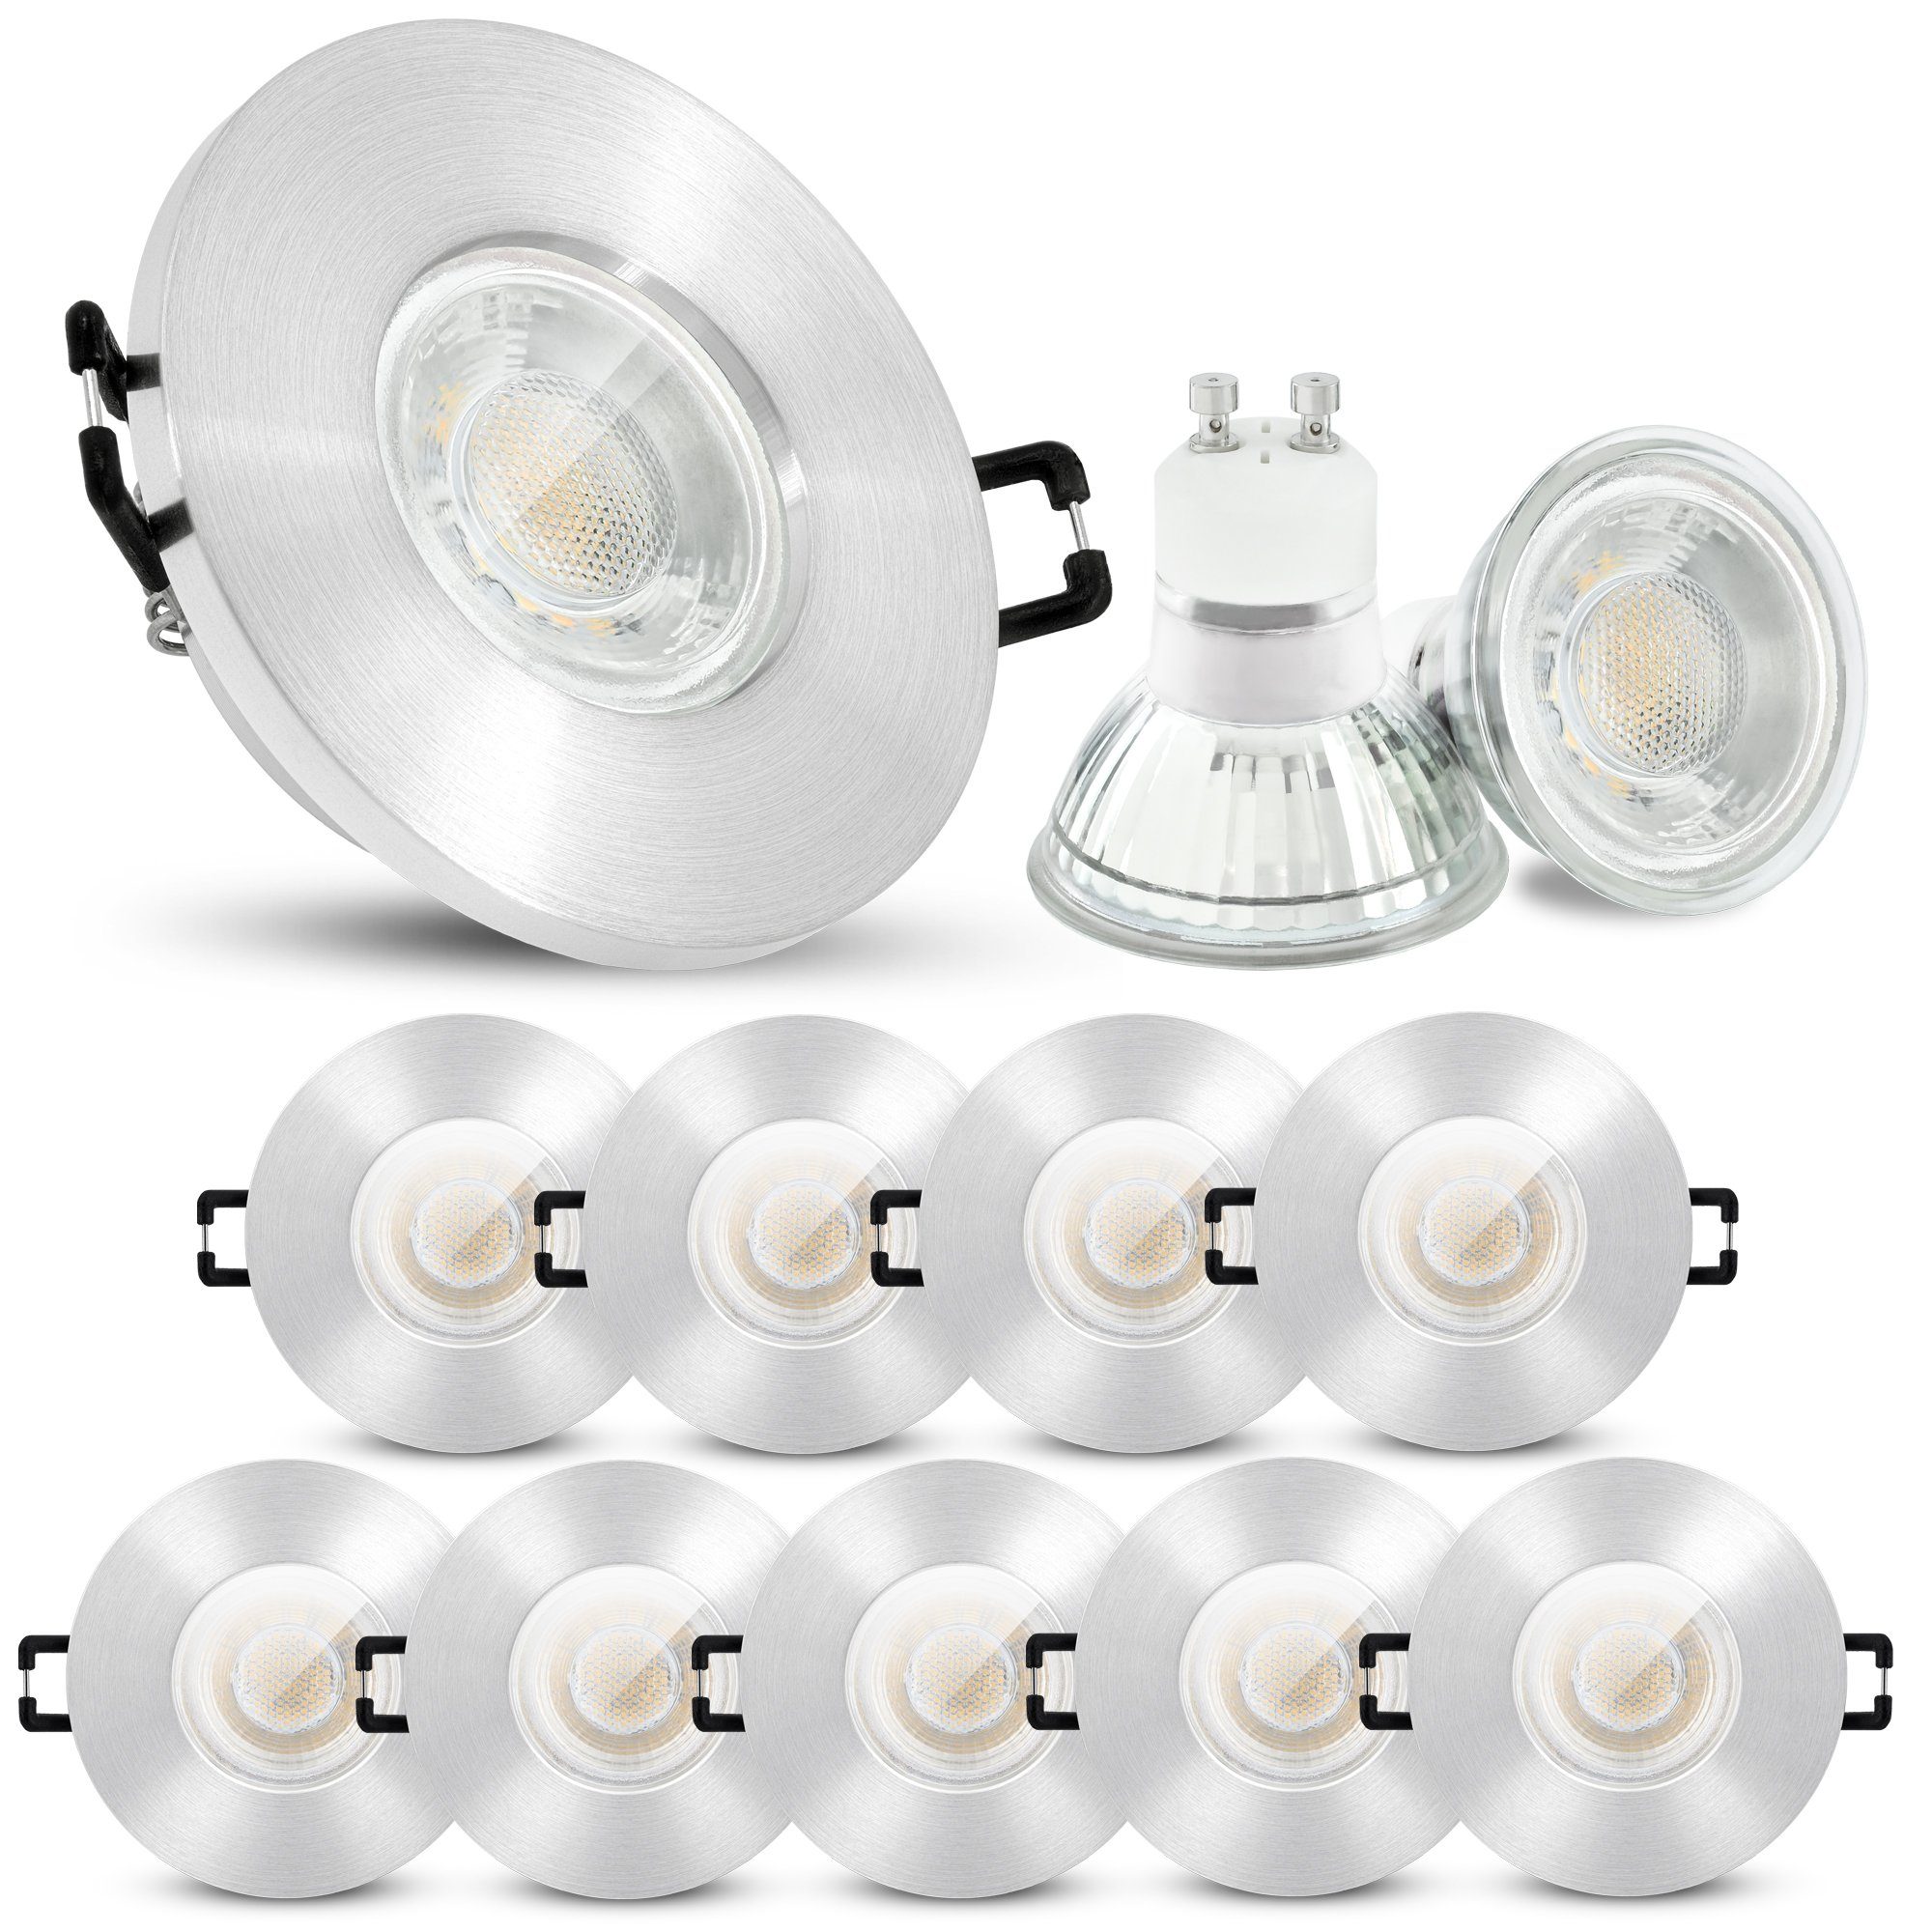 linovum LED Einbaustrahler 10er Set LED Einbaustrahler IP65 warmweiss GU10 3W 230V, Leuchtmittel inklusive, Leuchtmittel inklusive